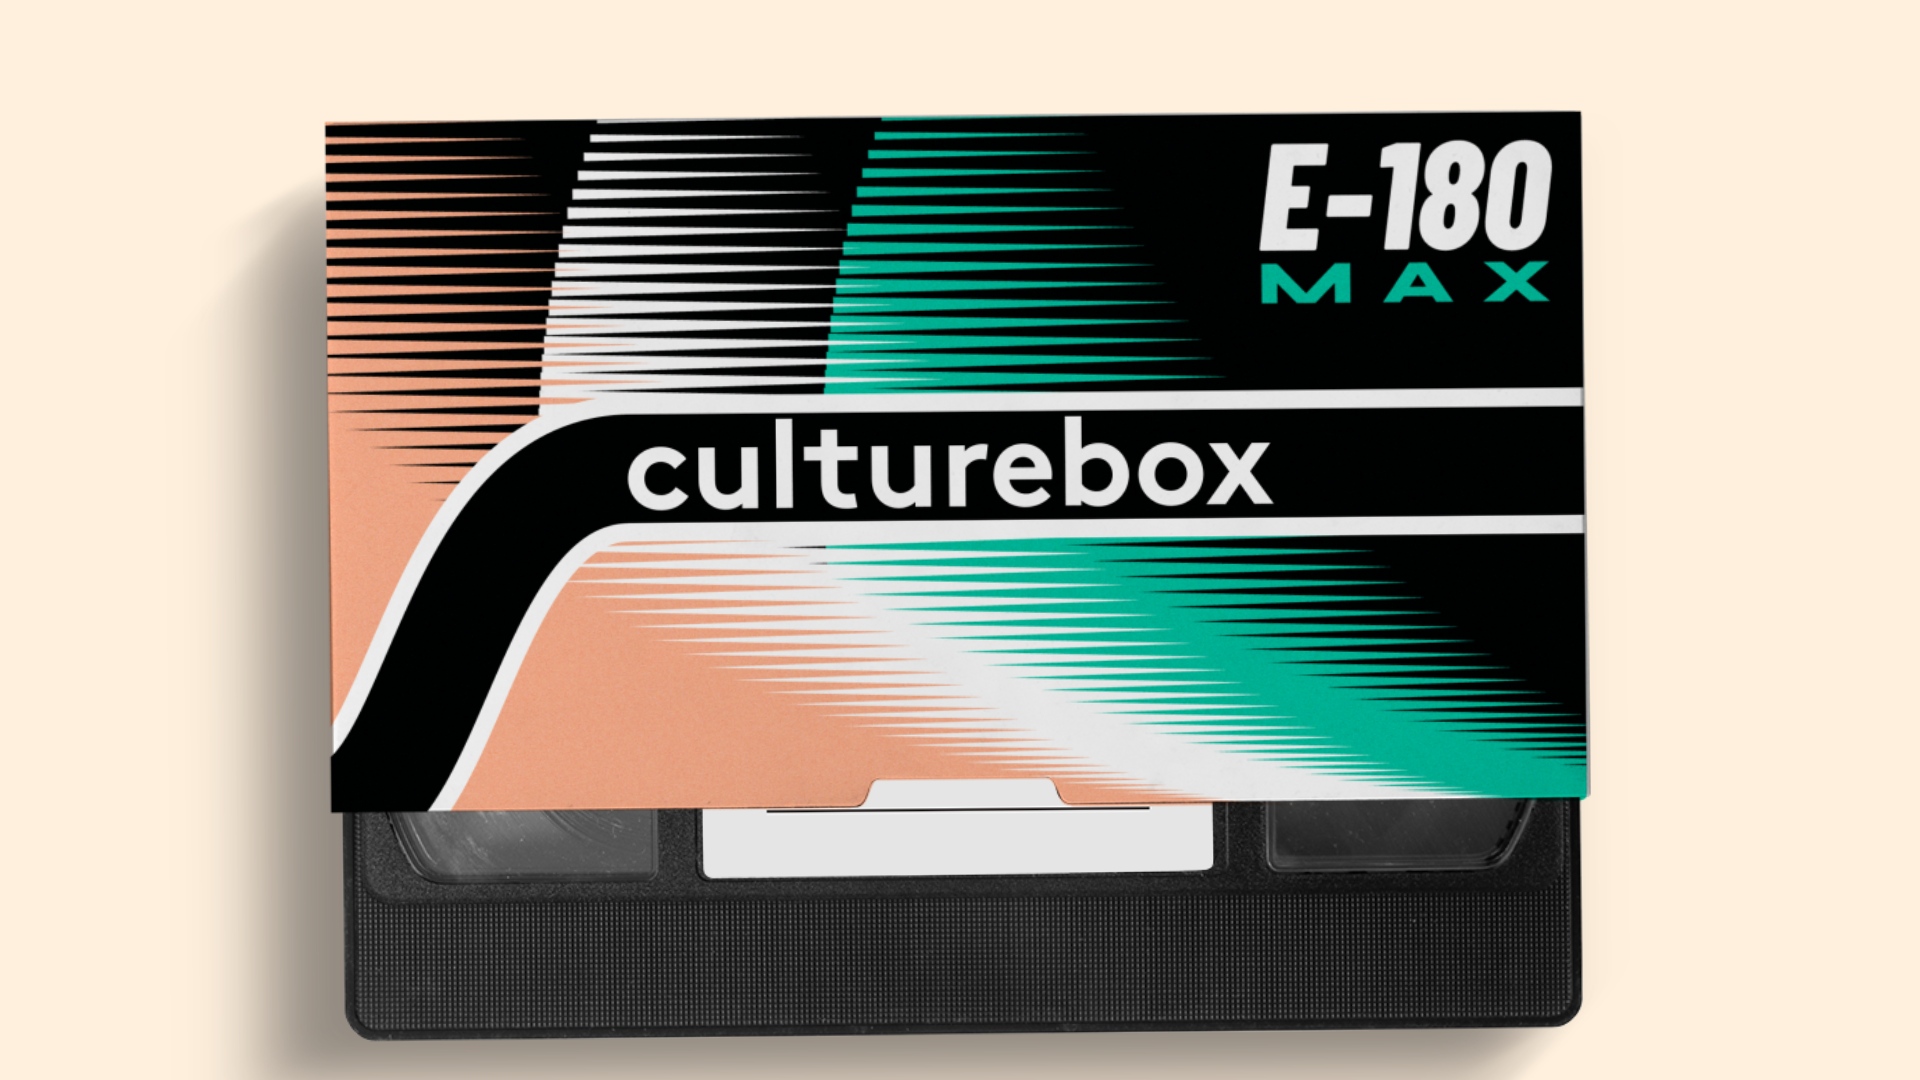 Fausse jaquette de vhs style années 90 avec le logo culturebox